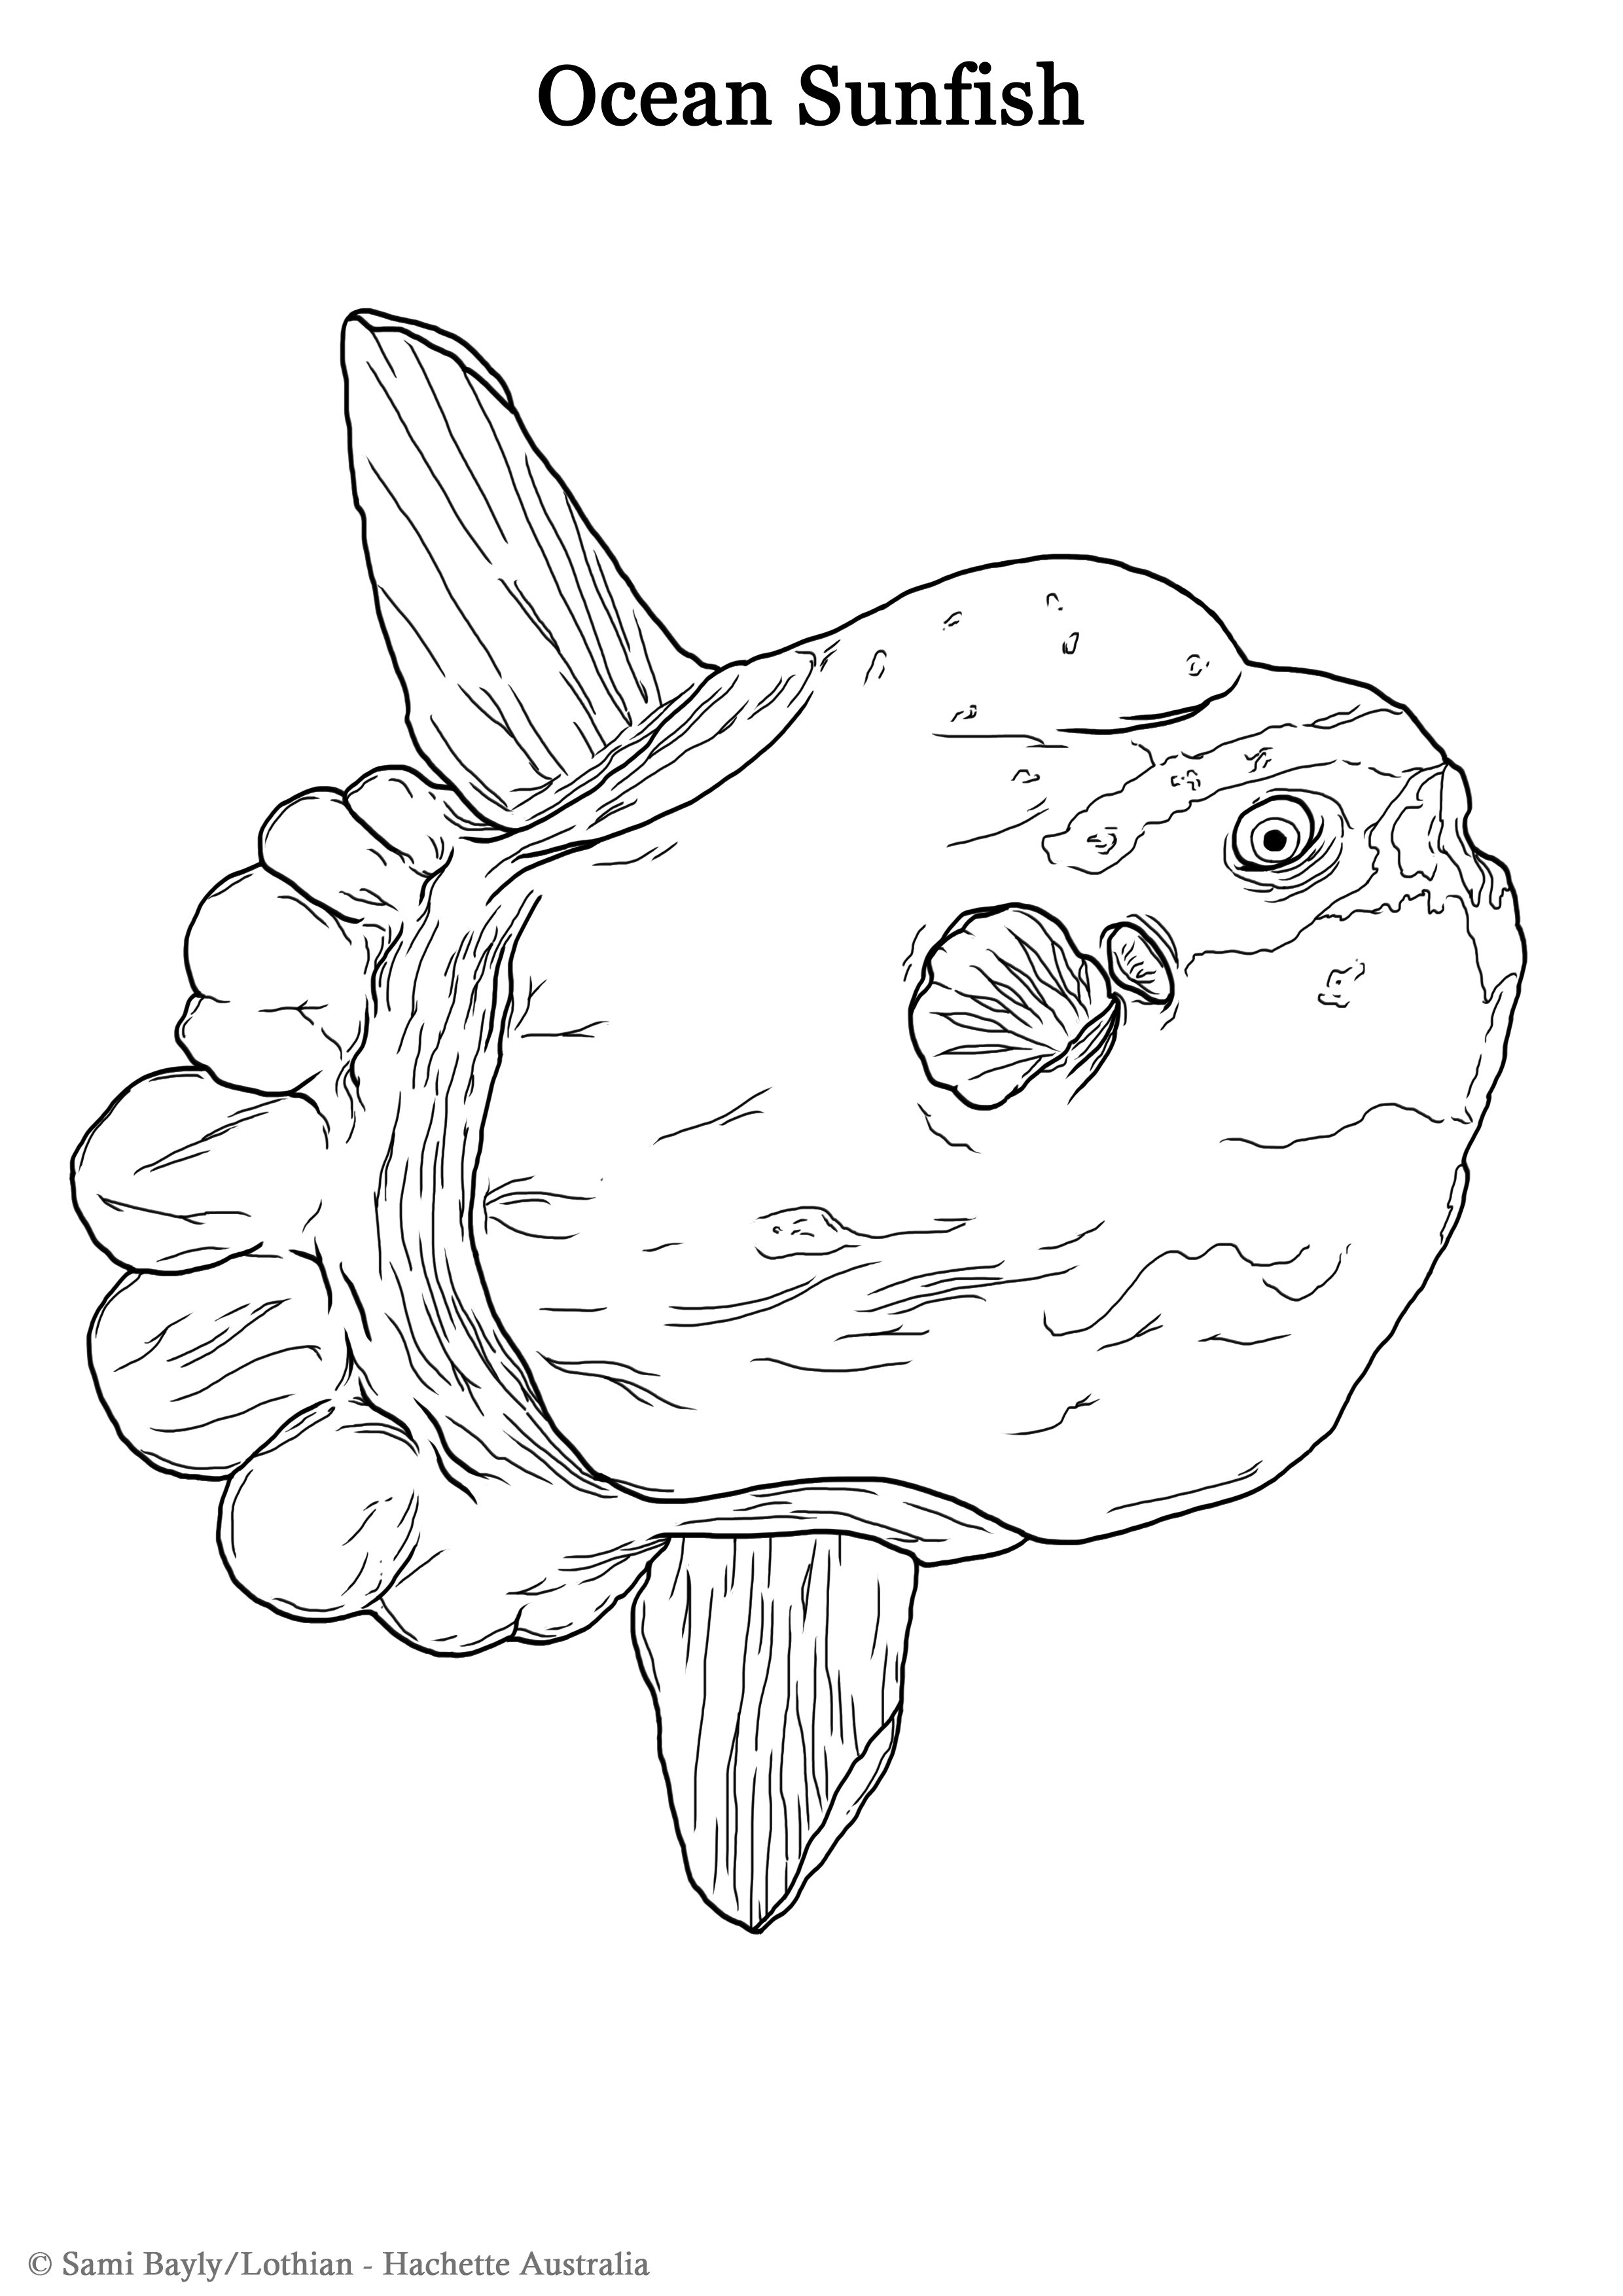 Ocean Sunfish Line Drawing.jpg